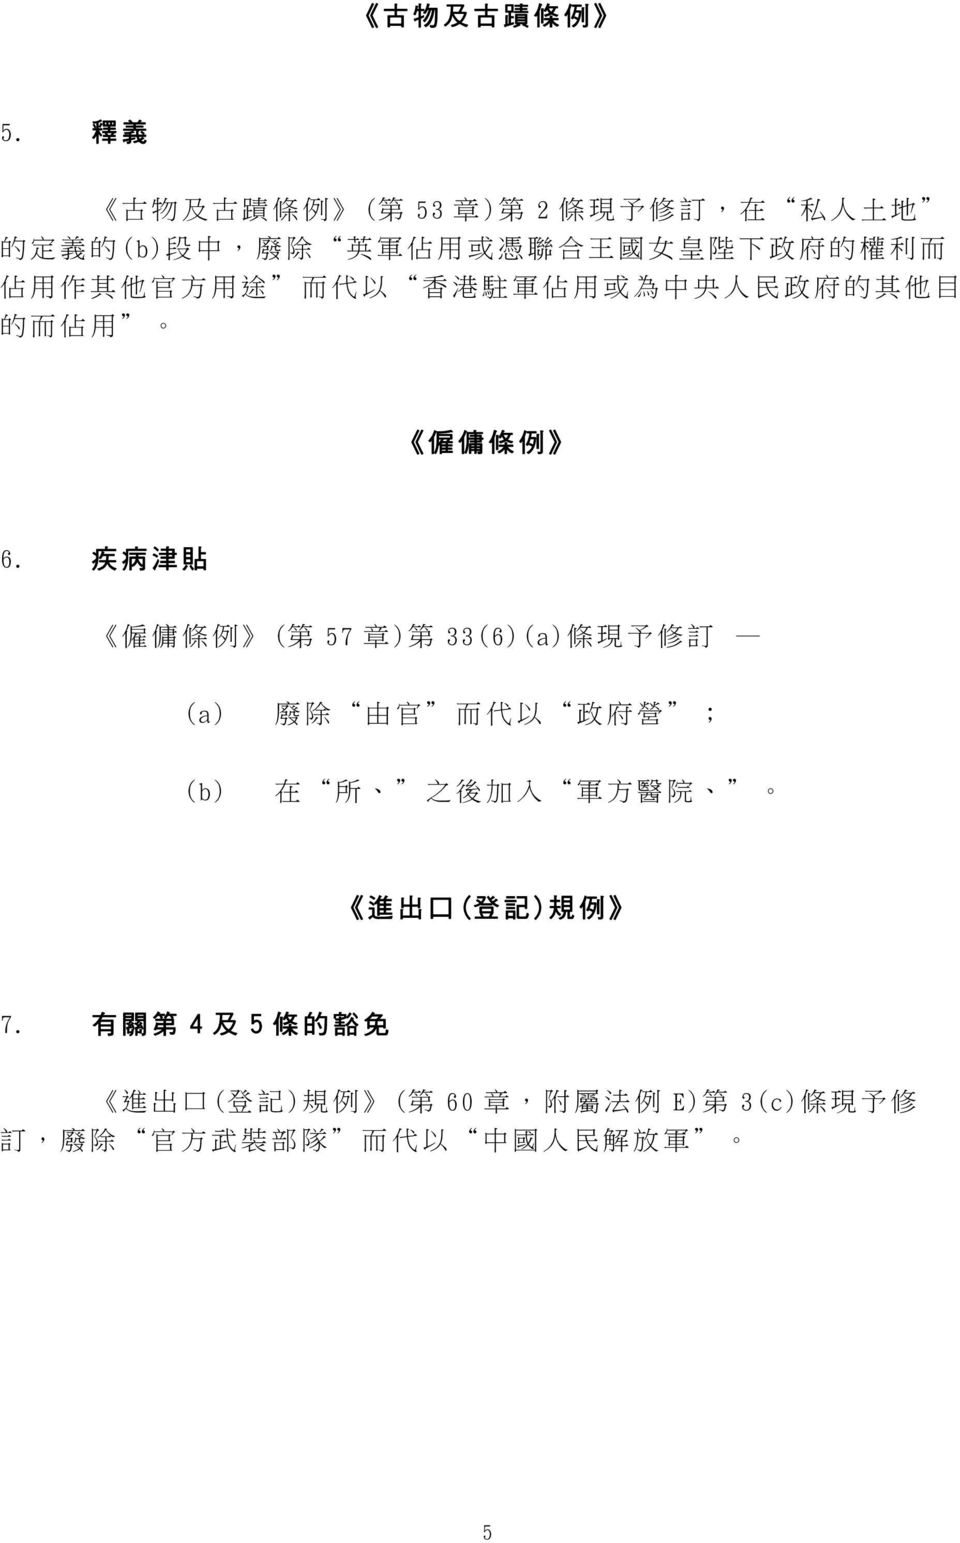 利 而 佔 用 作 其 他 官 方 用 途 而 代 以 香 港 駐 軍 佔 用 或 為 中 央 人 民 政 府 的 其 他 目 的 而 佔 用 僱 傭 條 例 6.